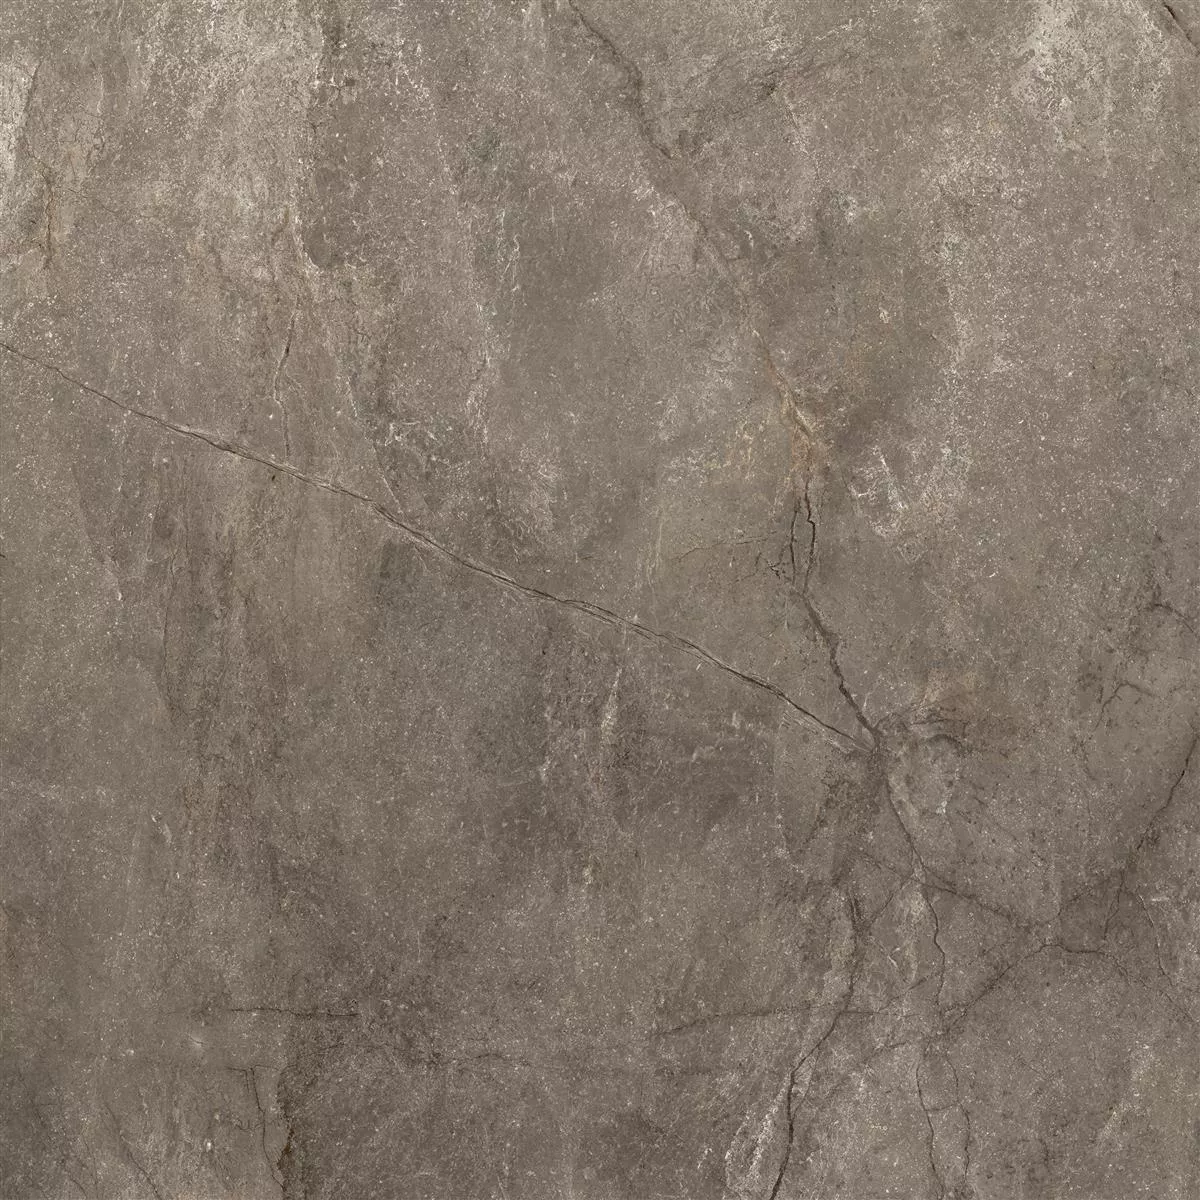 Πλακάκια Δαπέδου Pangea Μαρμάρινη Όψη Αμεμπτος Mokka 60x60cm